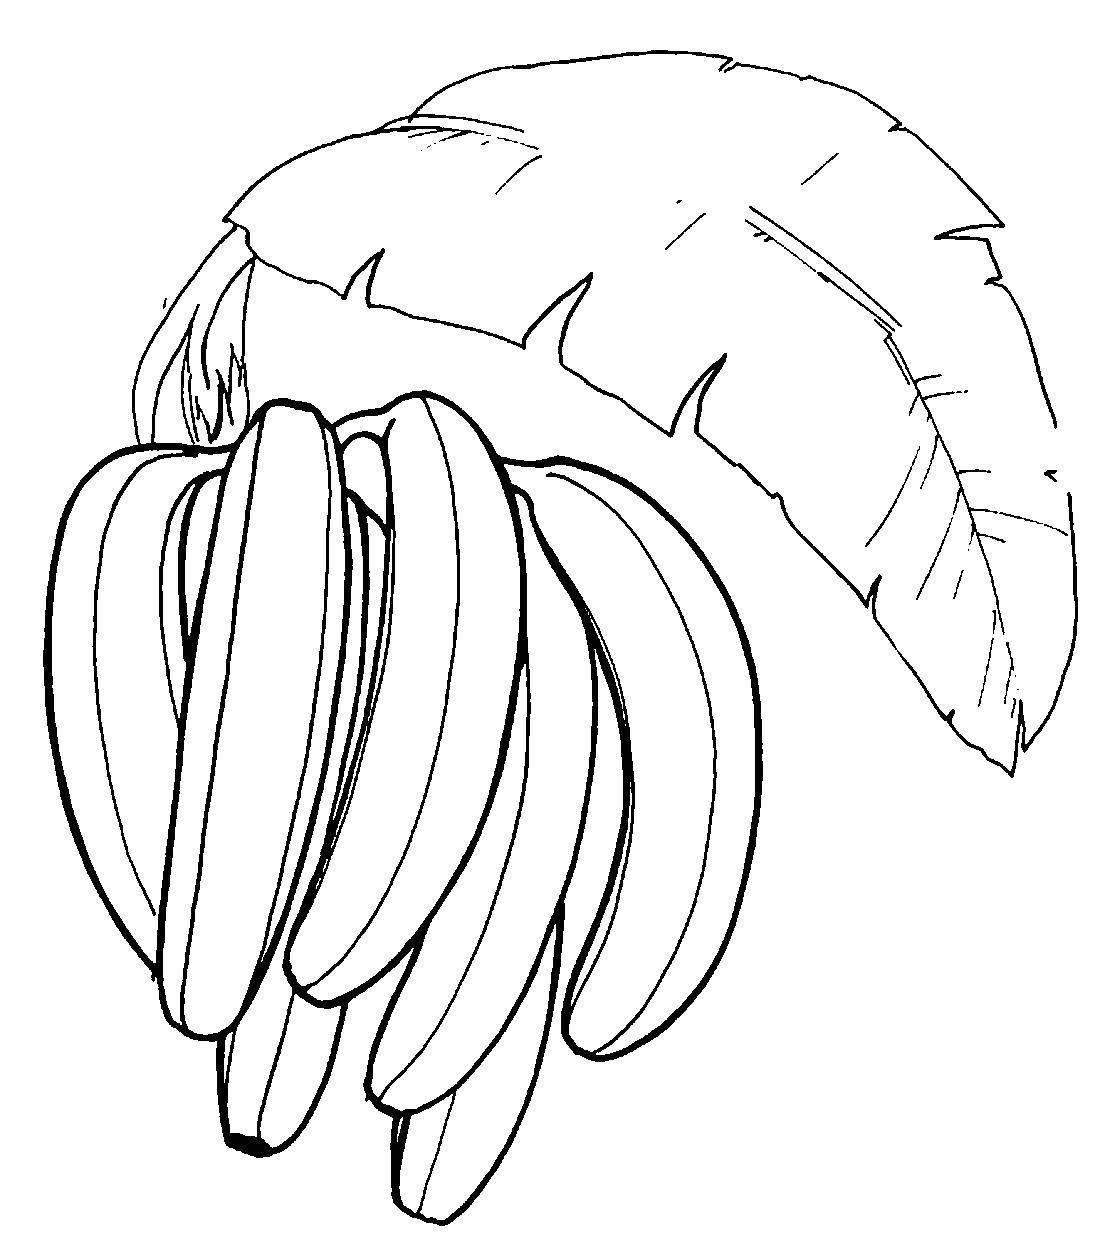 Coloring Banay. Category banana. Tags:  fruit, bananas.